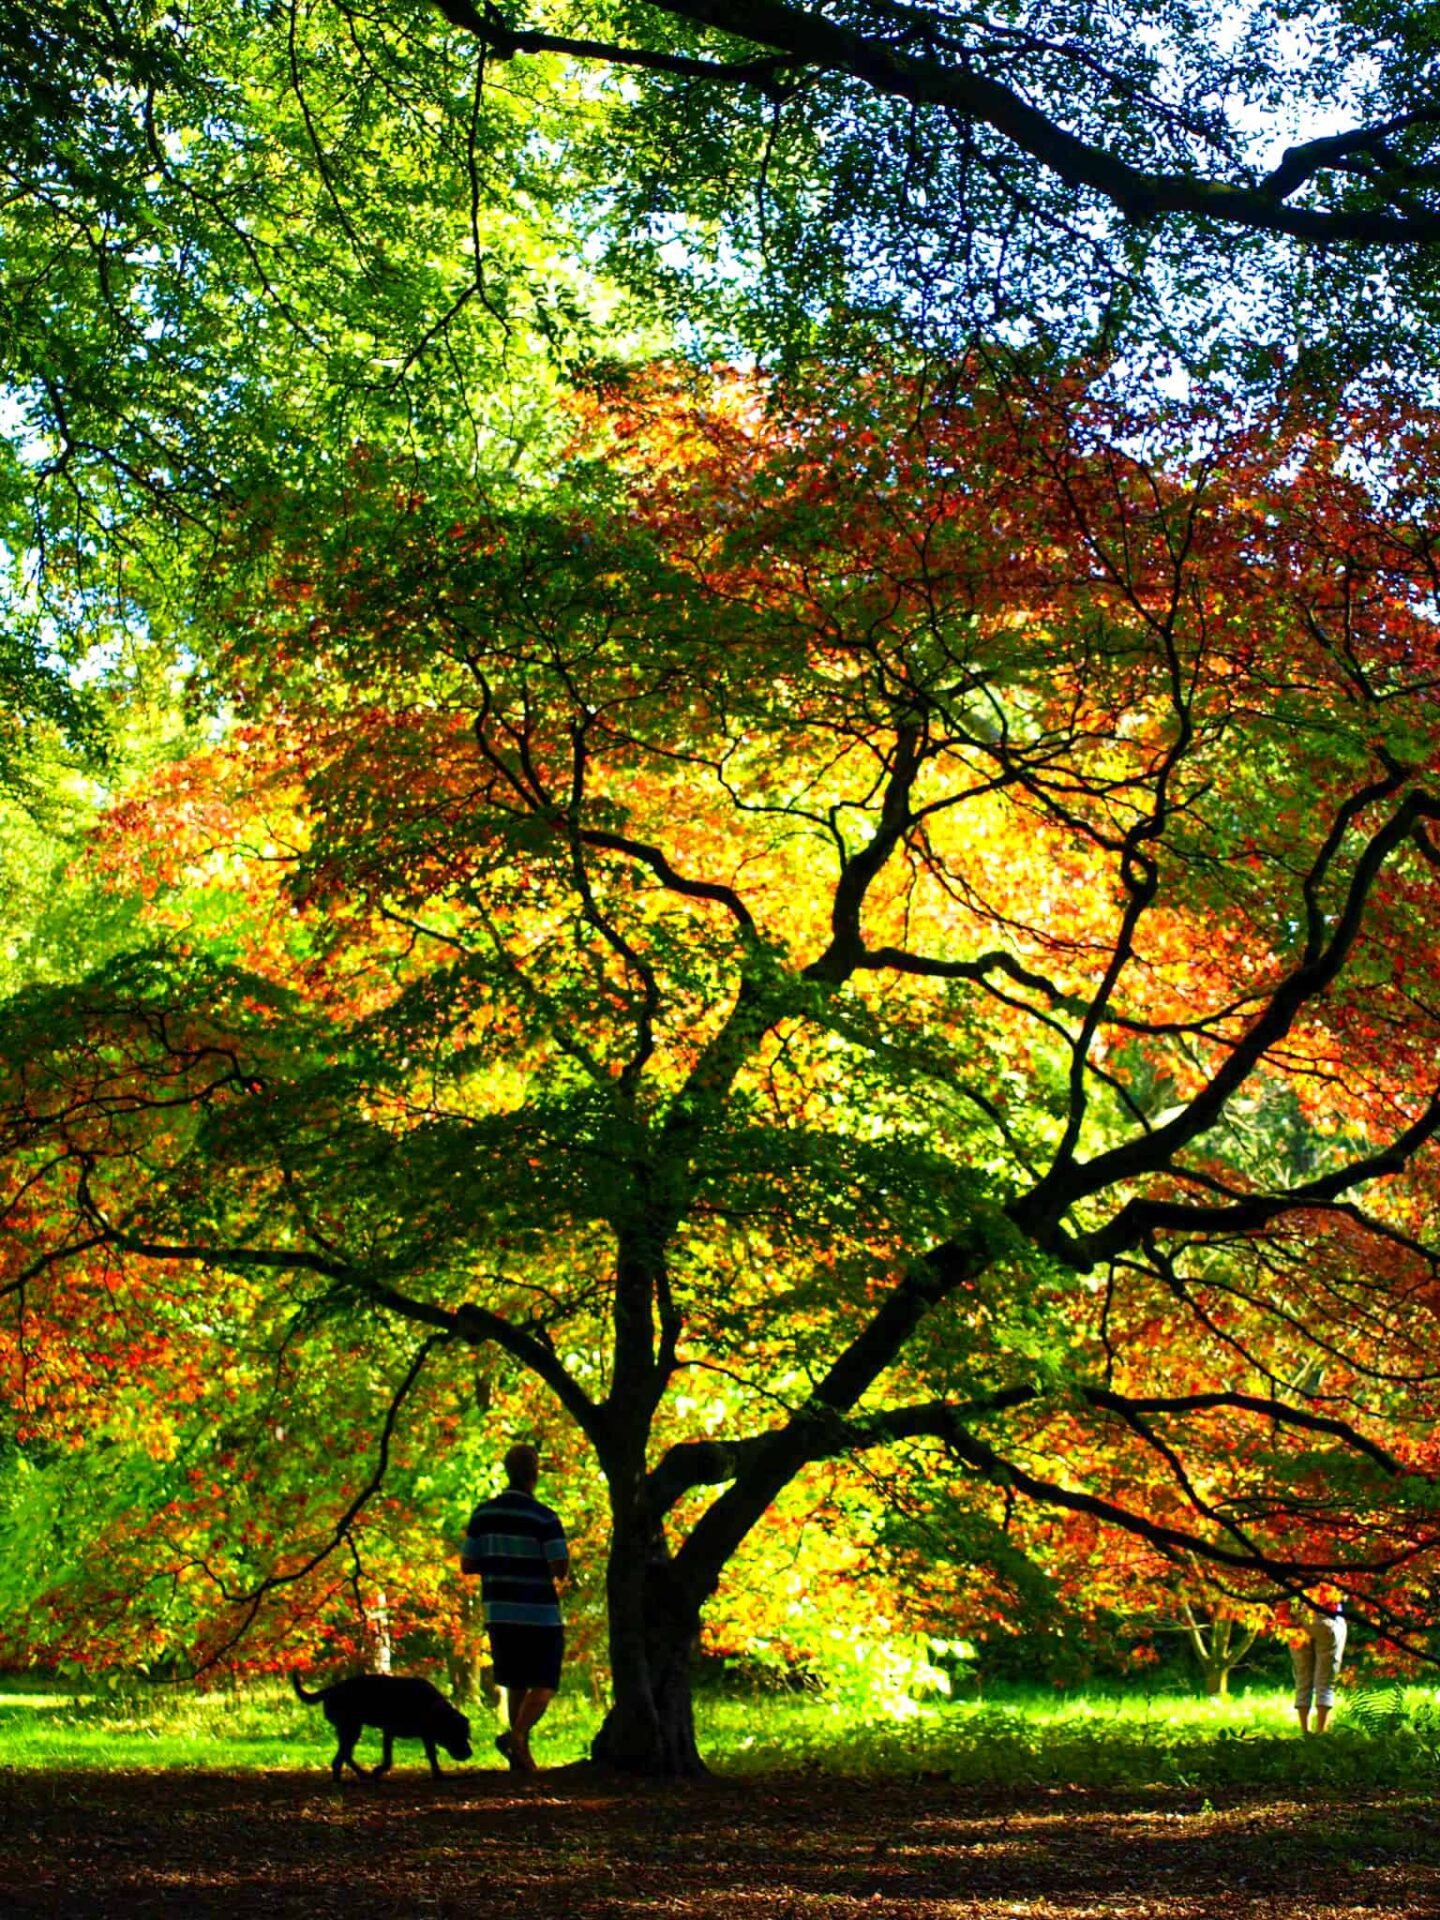 Westonbirt Arboretum in autumn